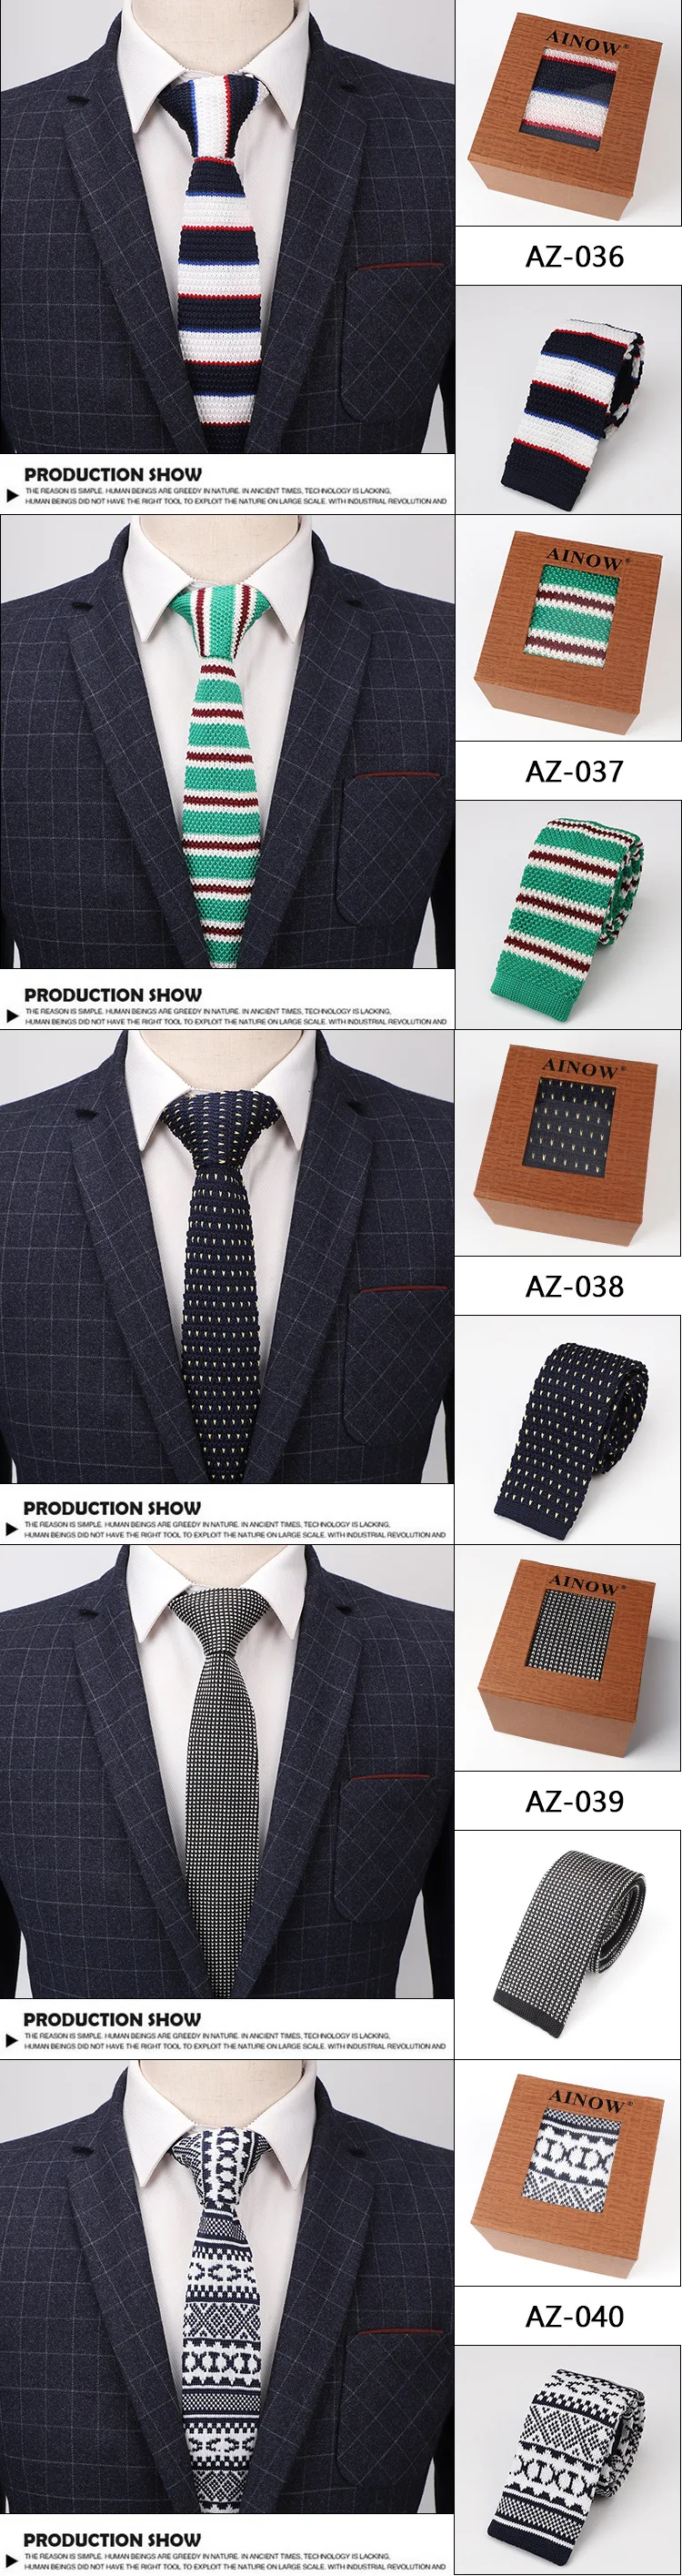 2019 подлинный бренд Тонкий 6 см Для мужчин в полоску узкий галстук трикотажный галстук Бизнес тканые трикотажные красочные галстук Cravate